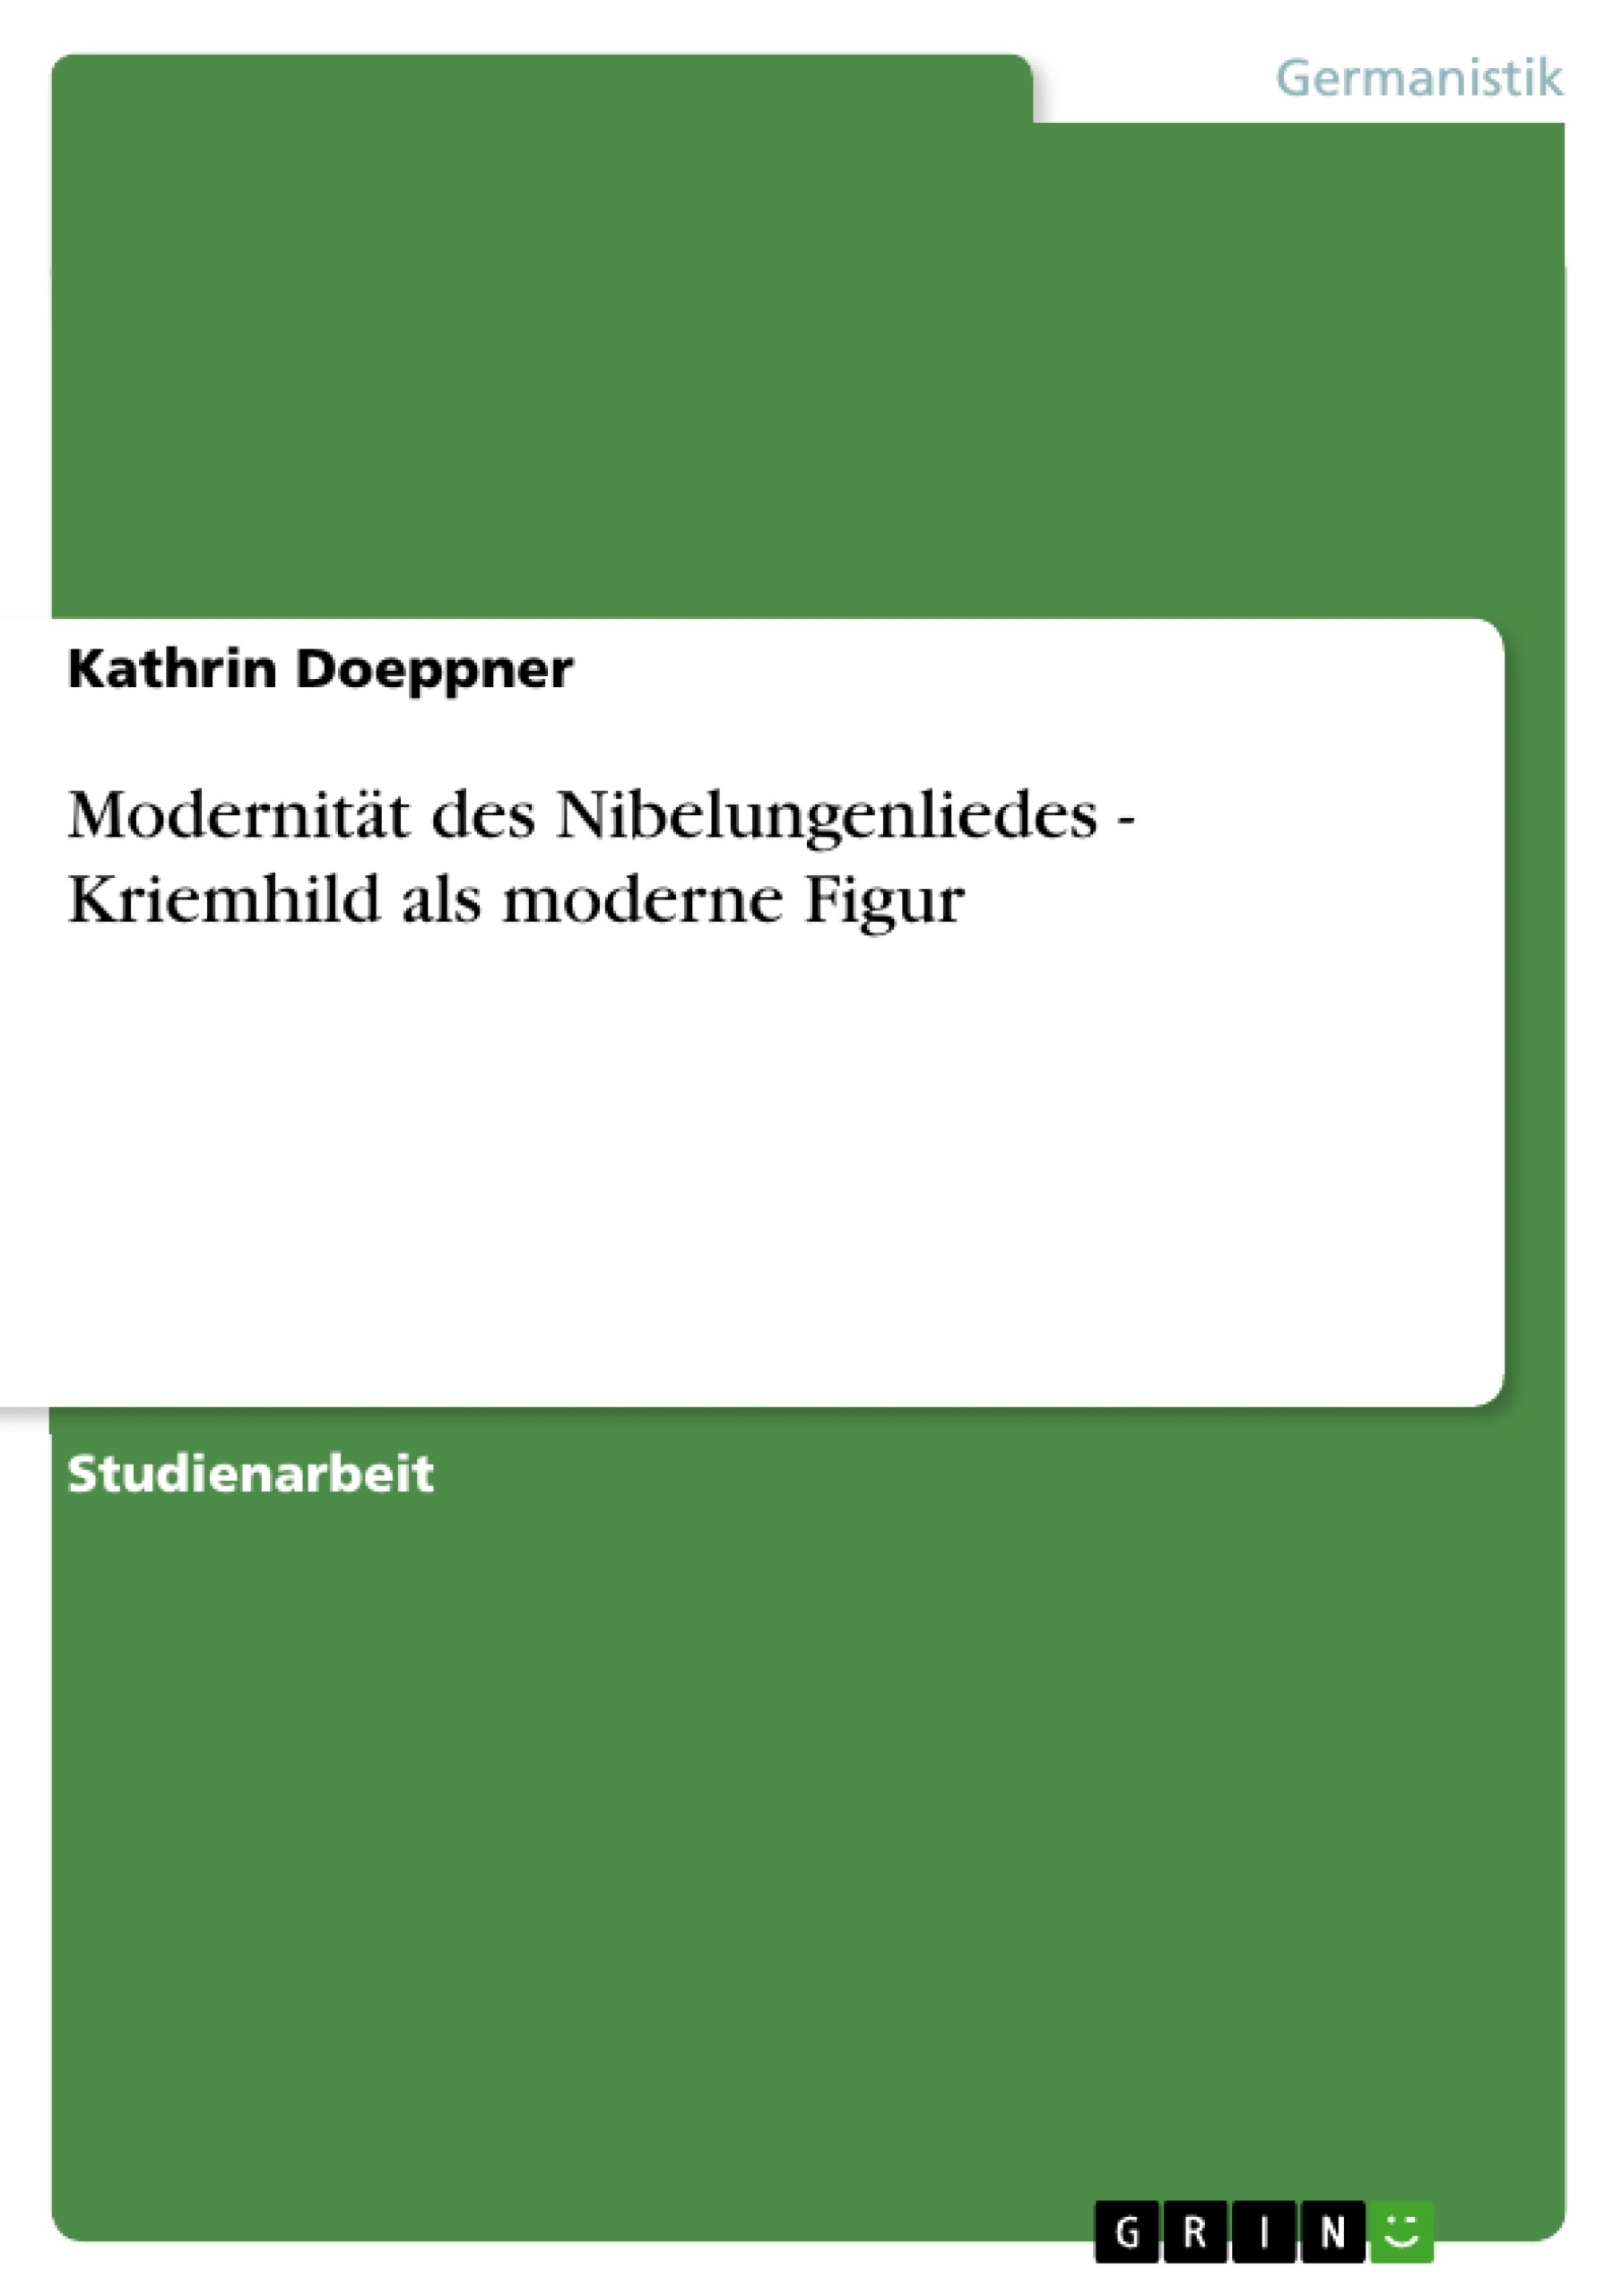 Título: Modernität des Nibelungenliedes - Kriemhild als moderne Figur  